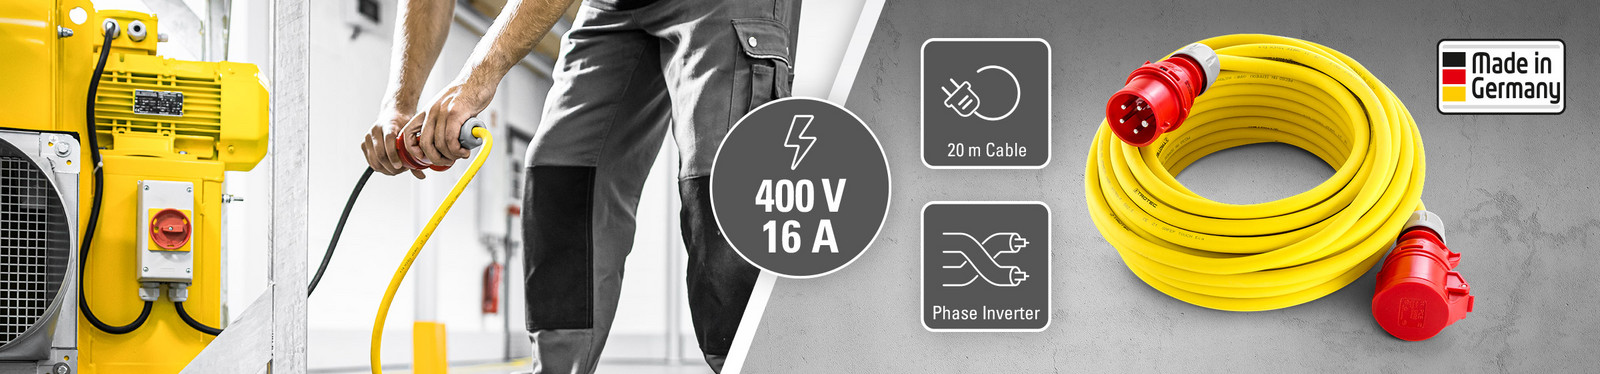 Επαγγελματικό καλώδιο επέκτασης 400 V (16 A) – Made in Germany